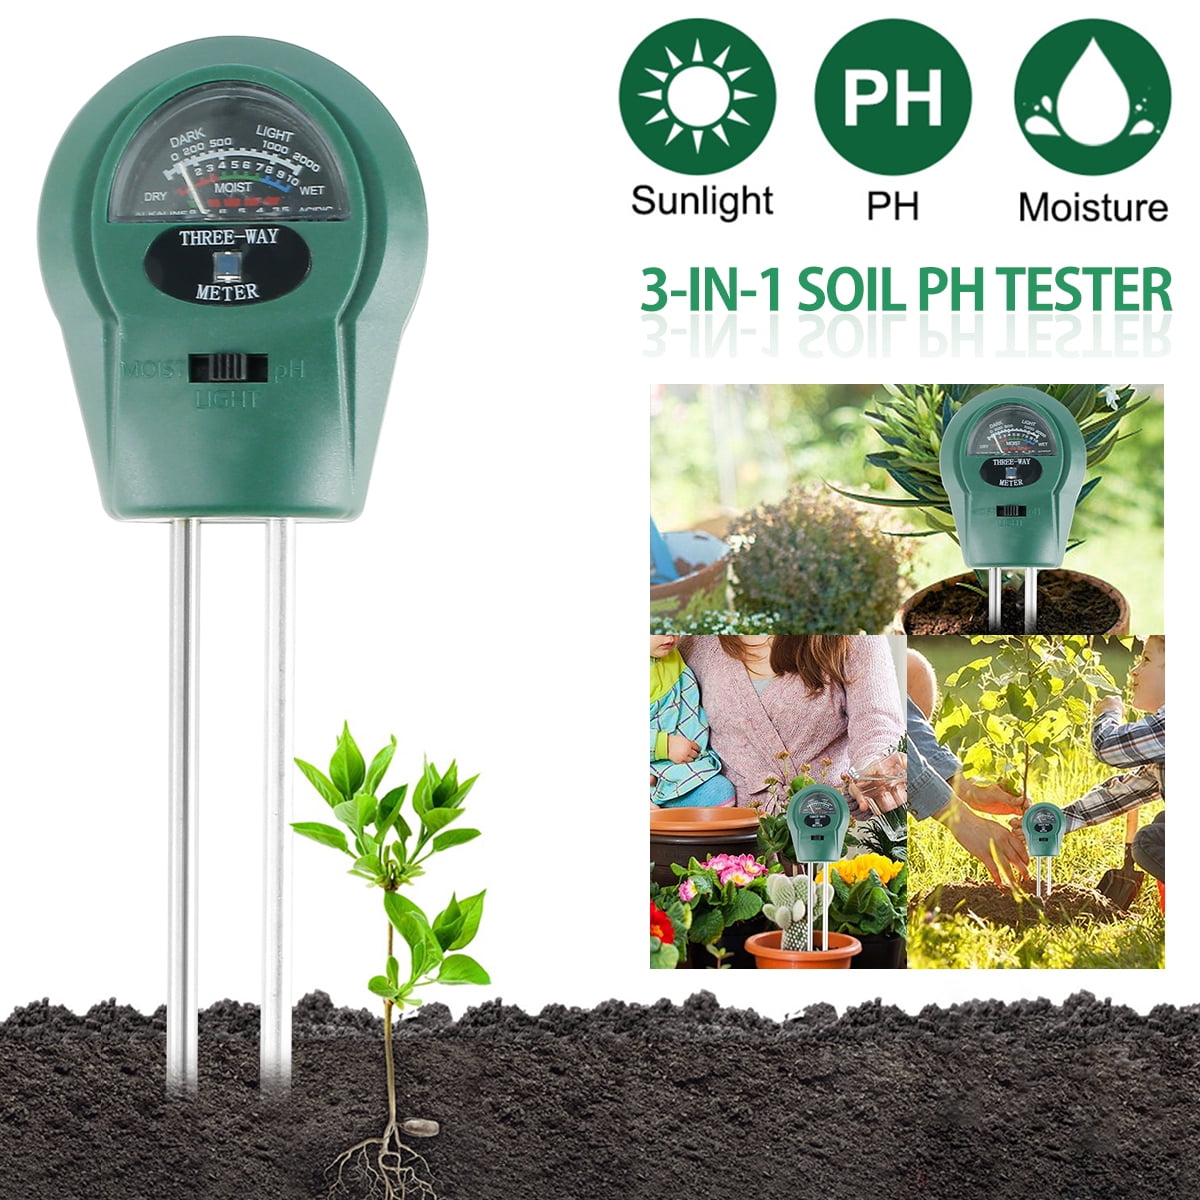 3-in-1 Soil Moisture Meter